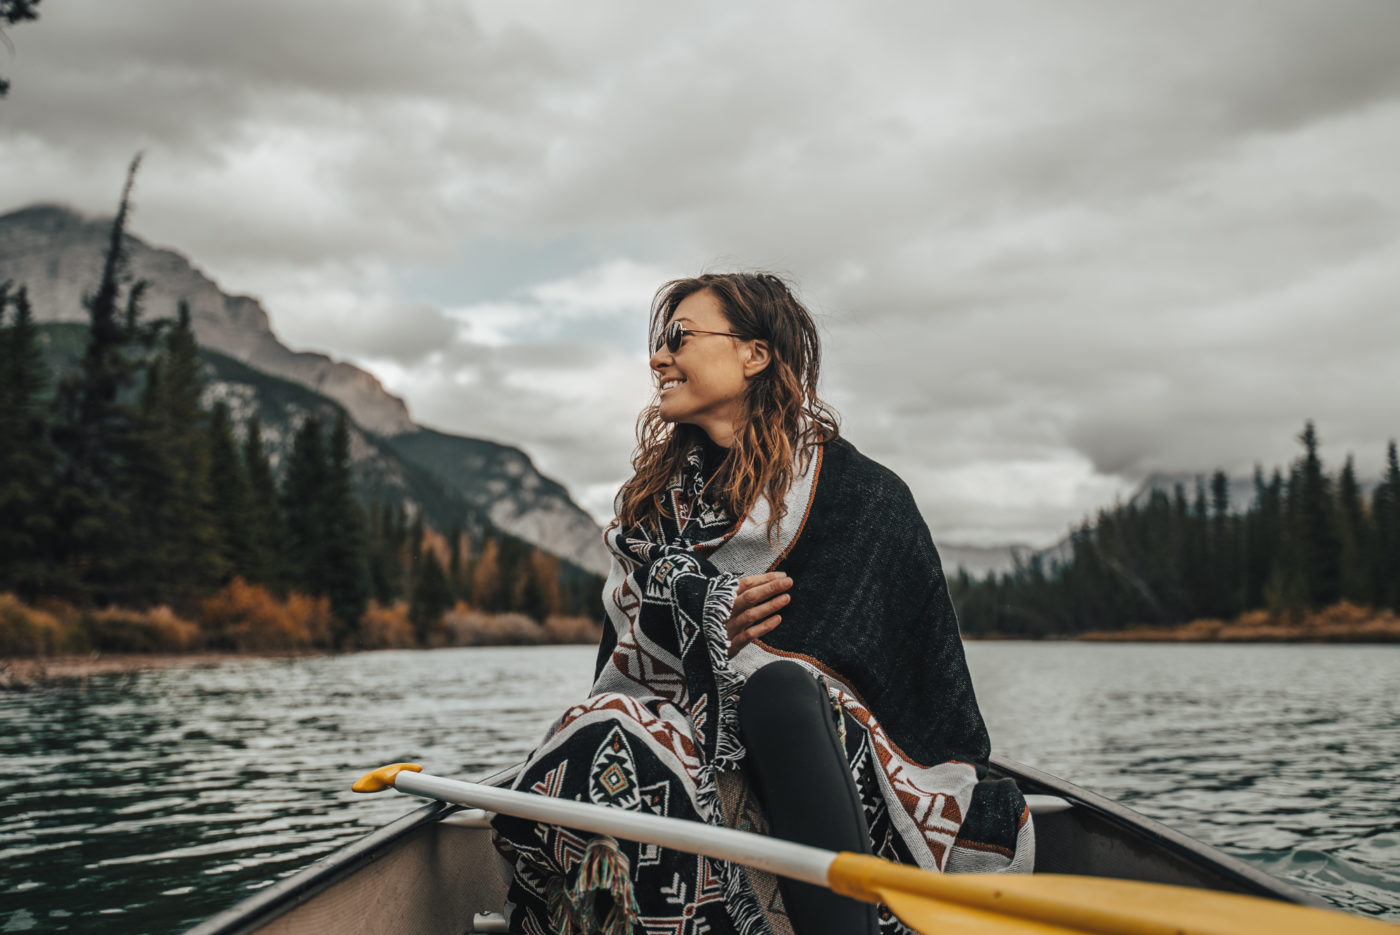 Canada Alberta Rockies Banff Bow river canoe Oksana 04035